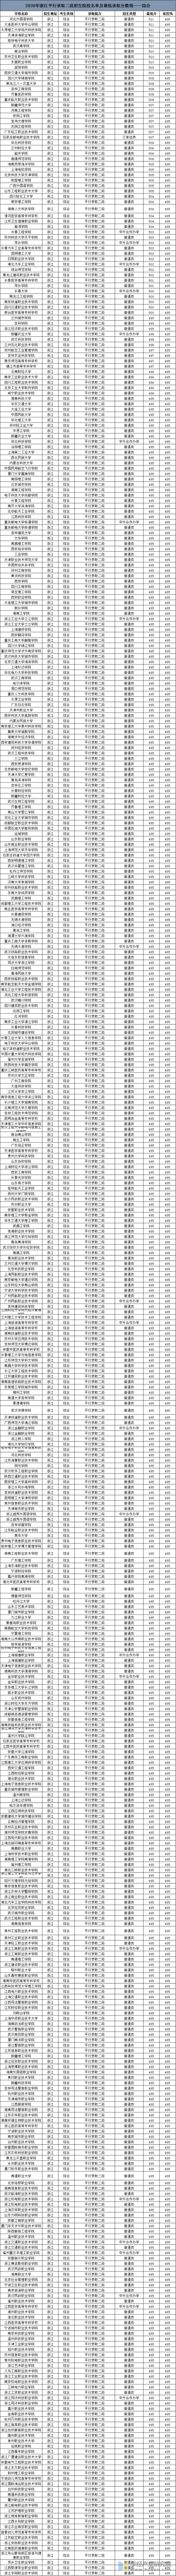 2020年浙江高考平行录取二段招生院校名单及最低录取分数线——综合